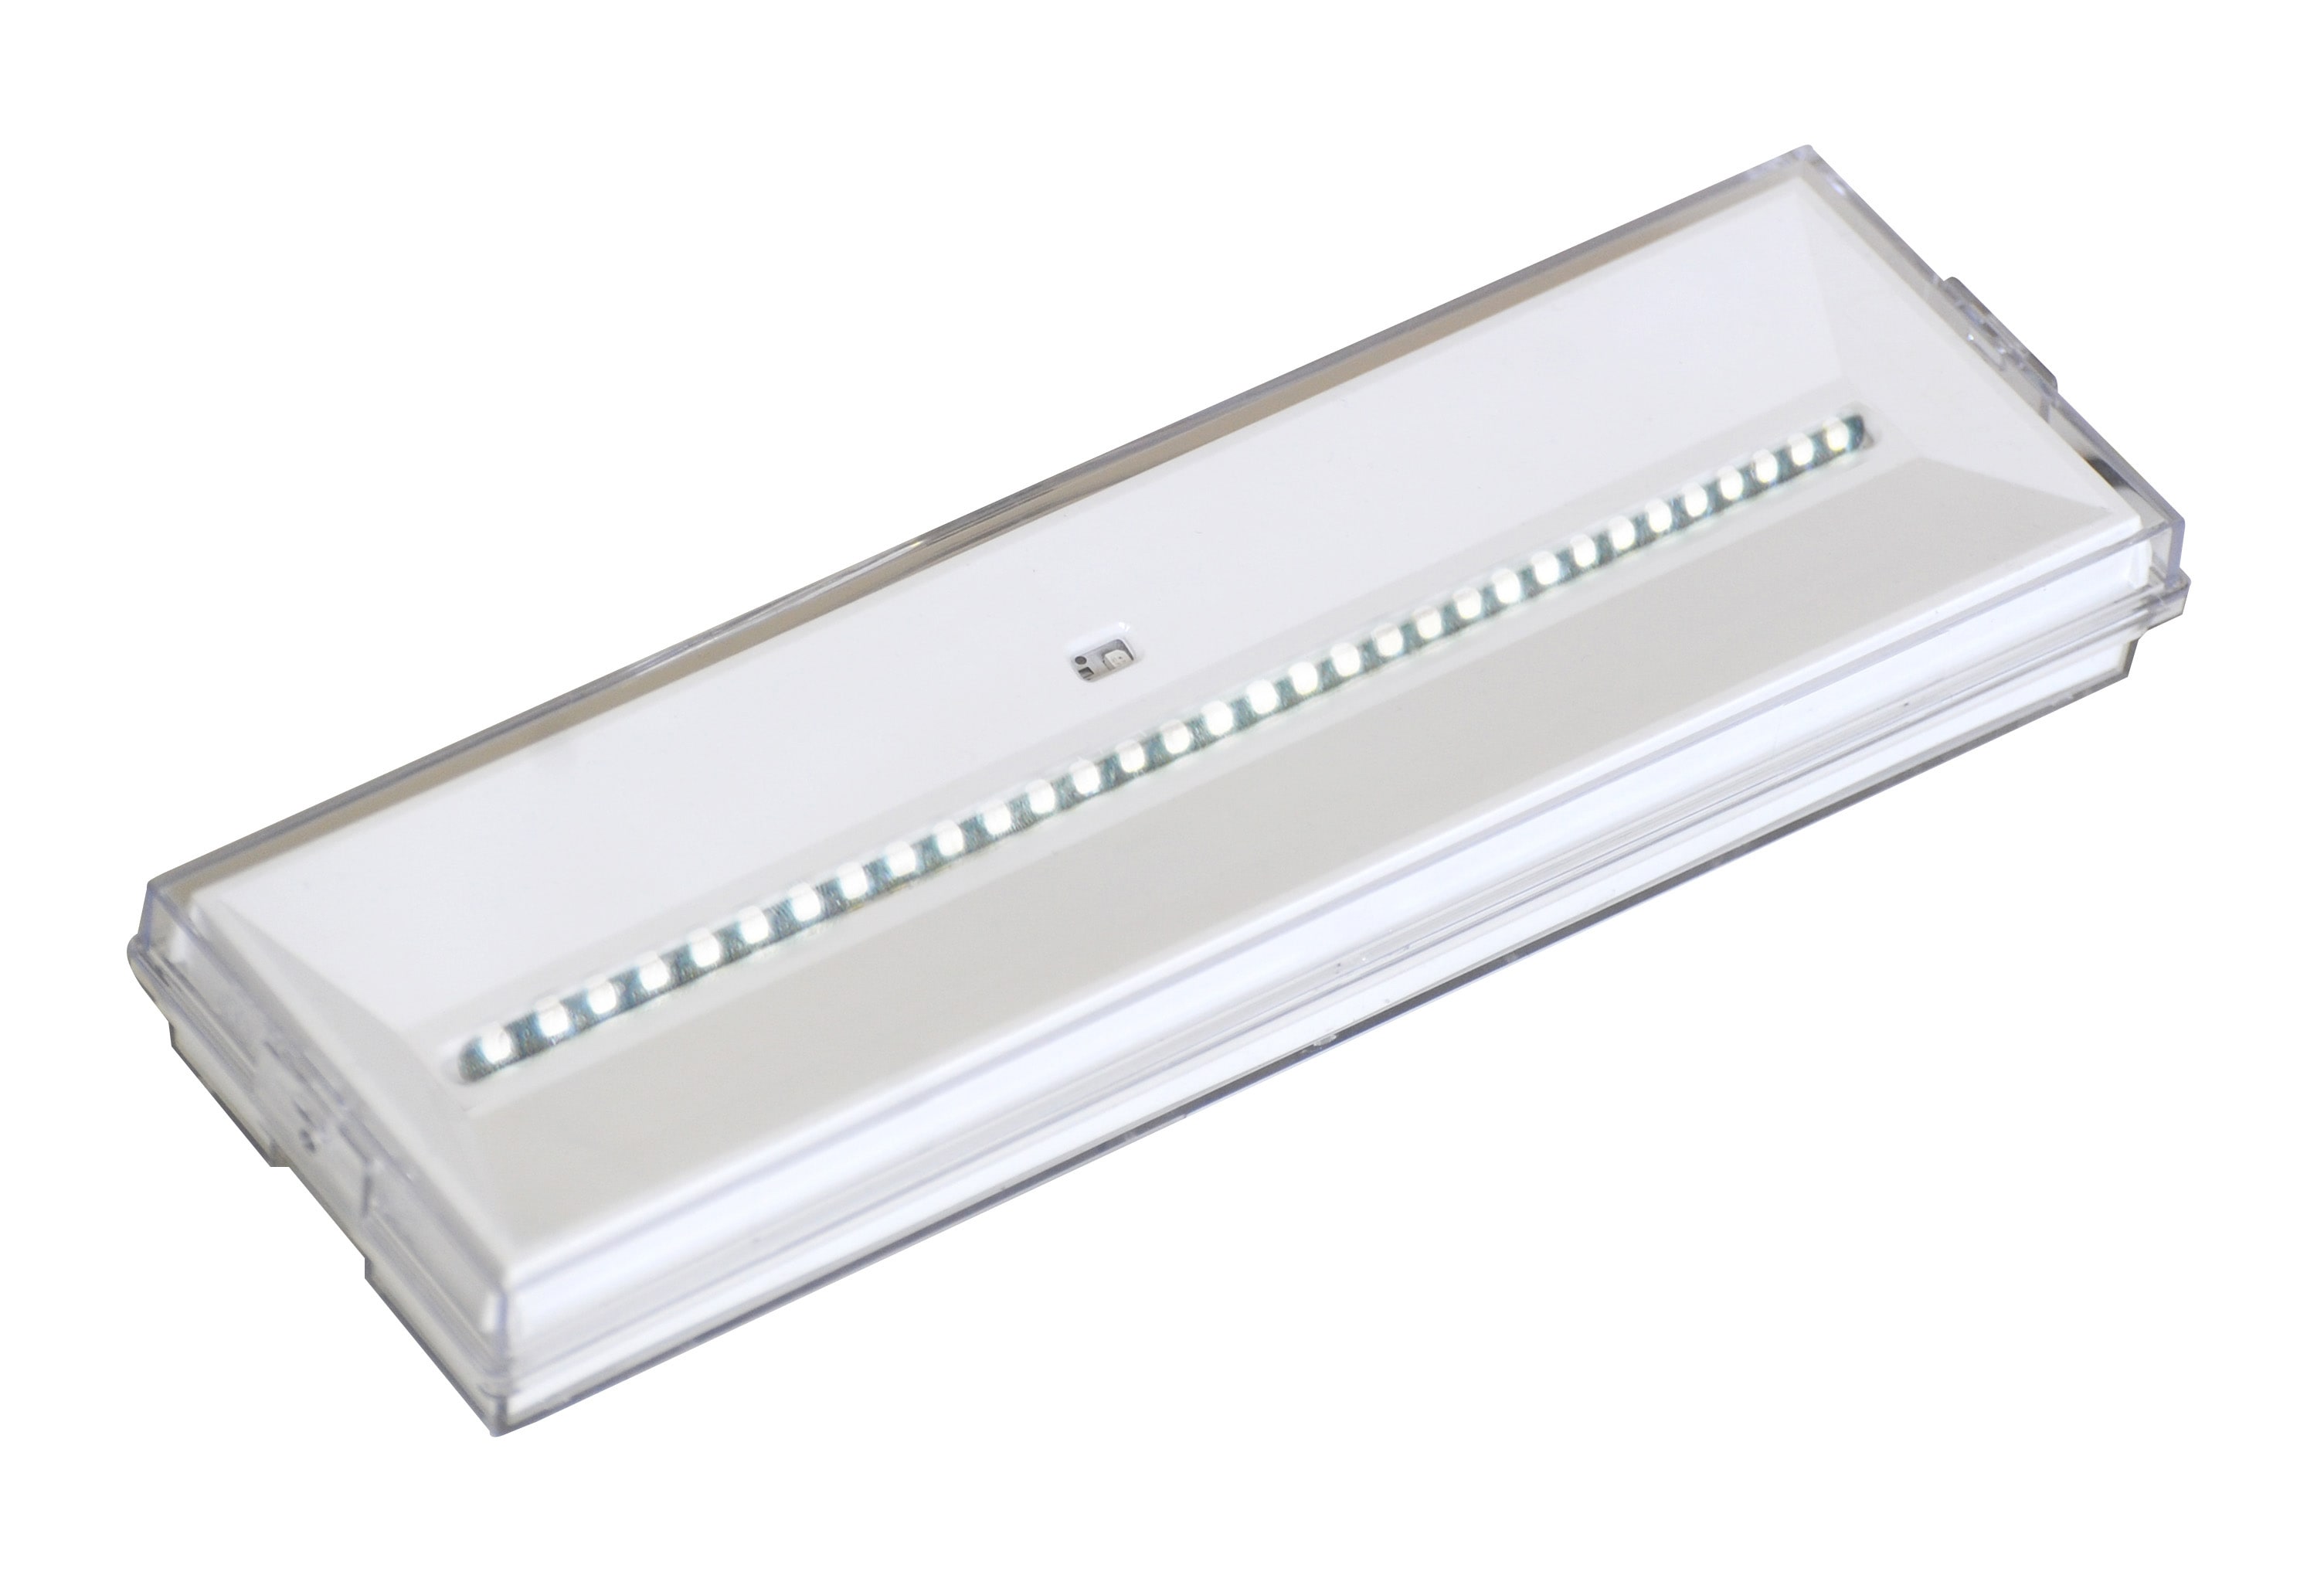 Cooper Securite - Luminaire conventionnel d'ambiance pour sources centrales 24-48Vcc.